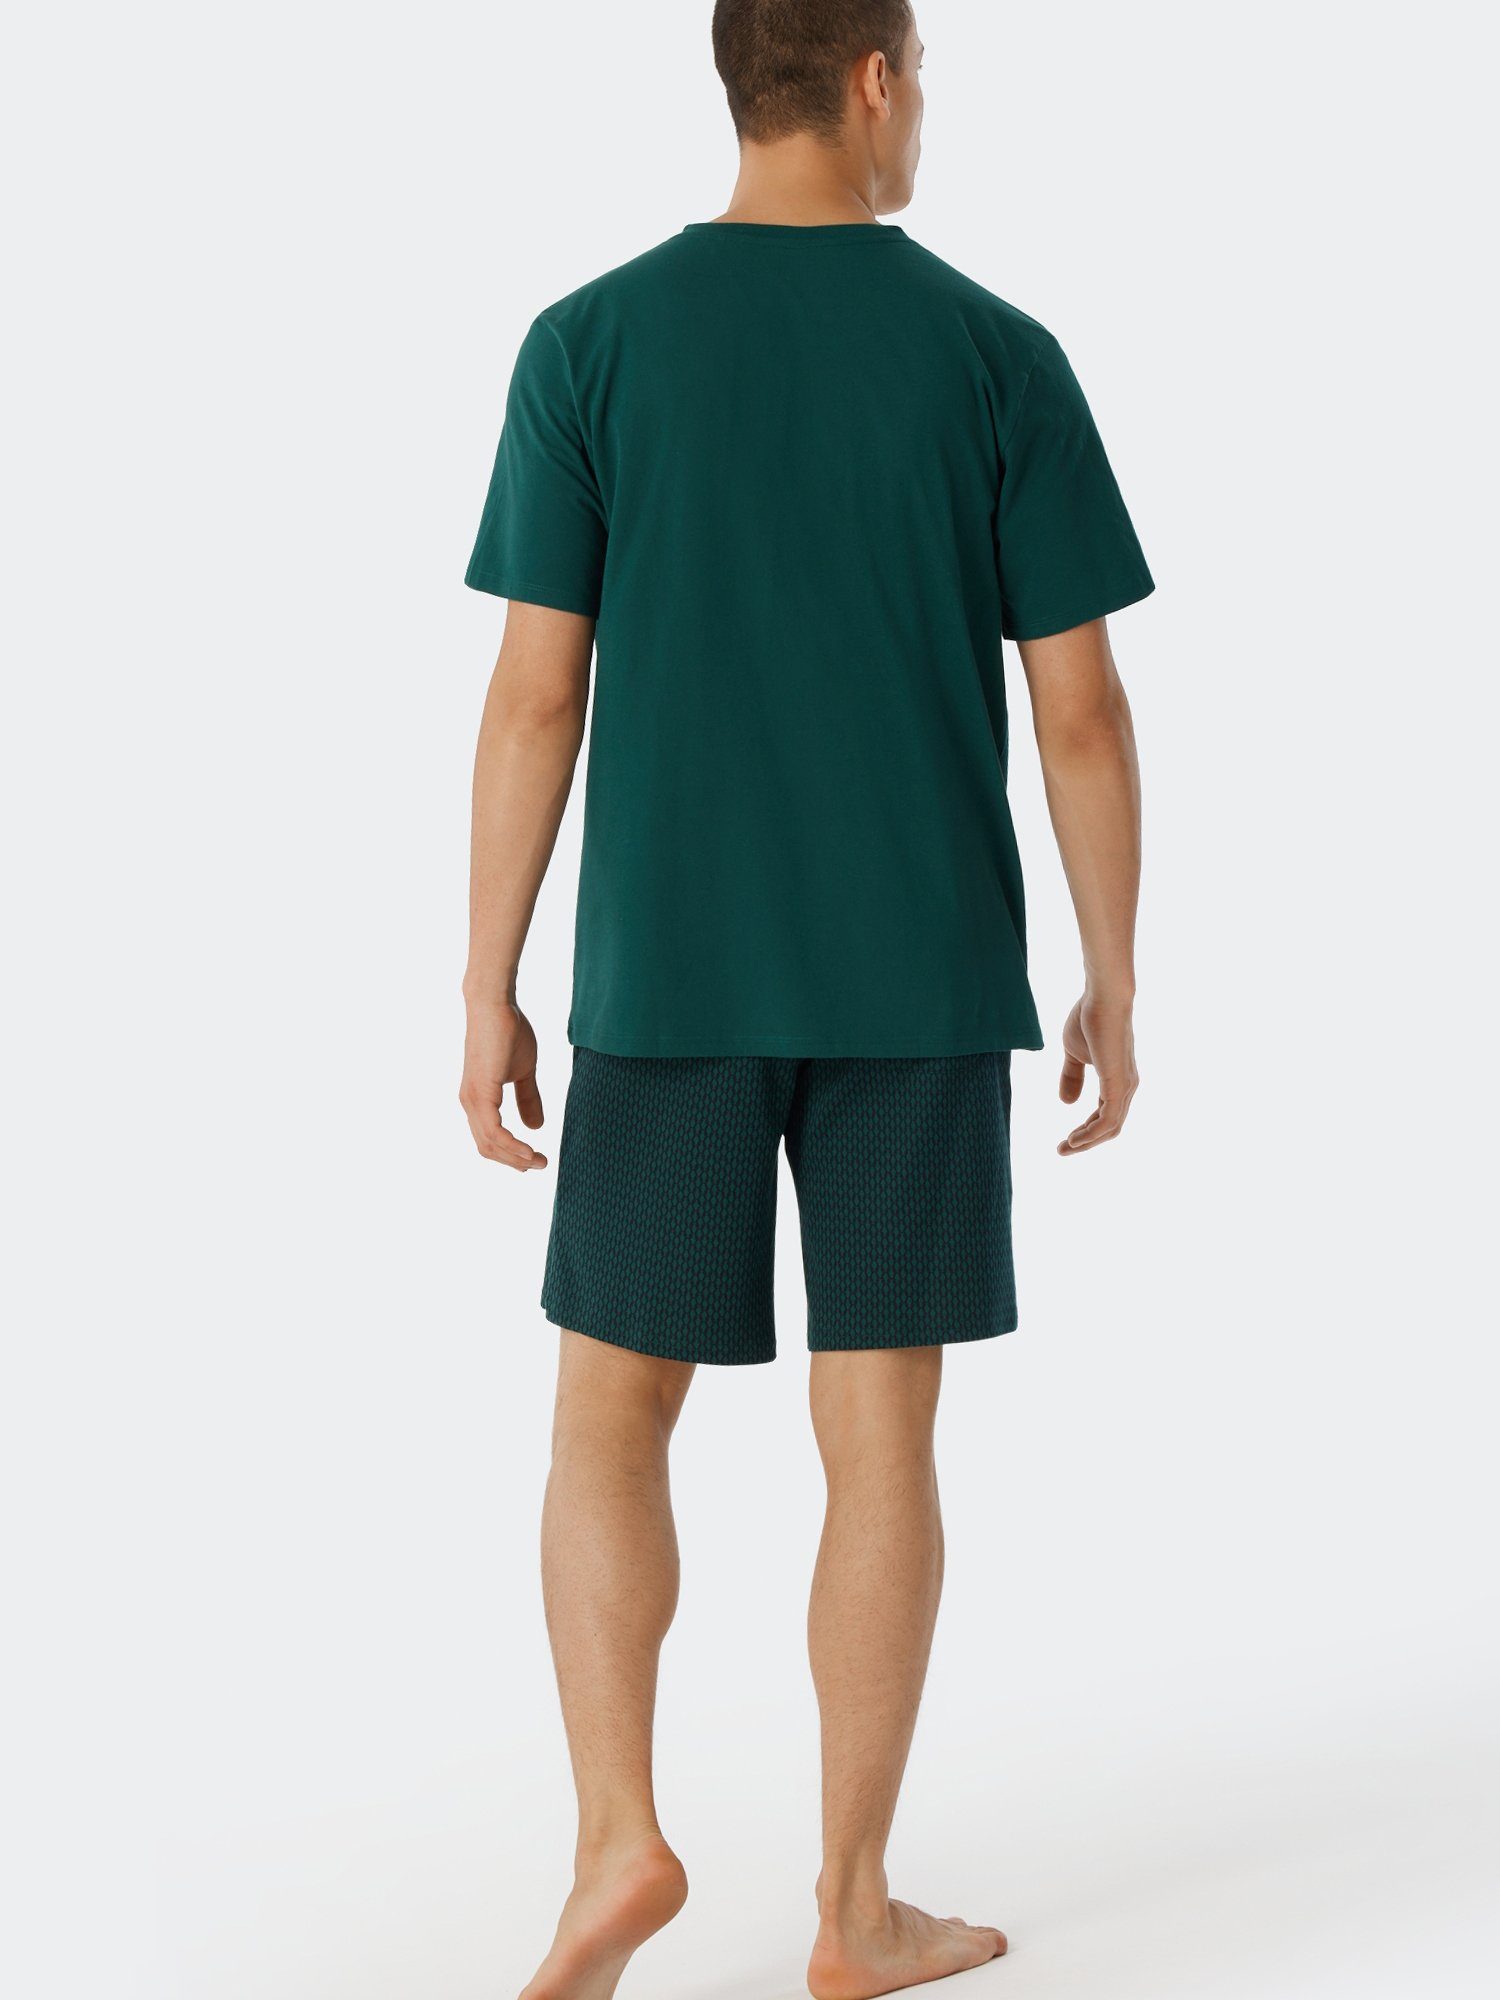 Schiesser Relax Mix dunkelgrün & V-Shirt